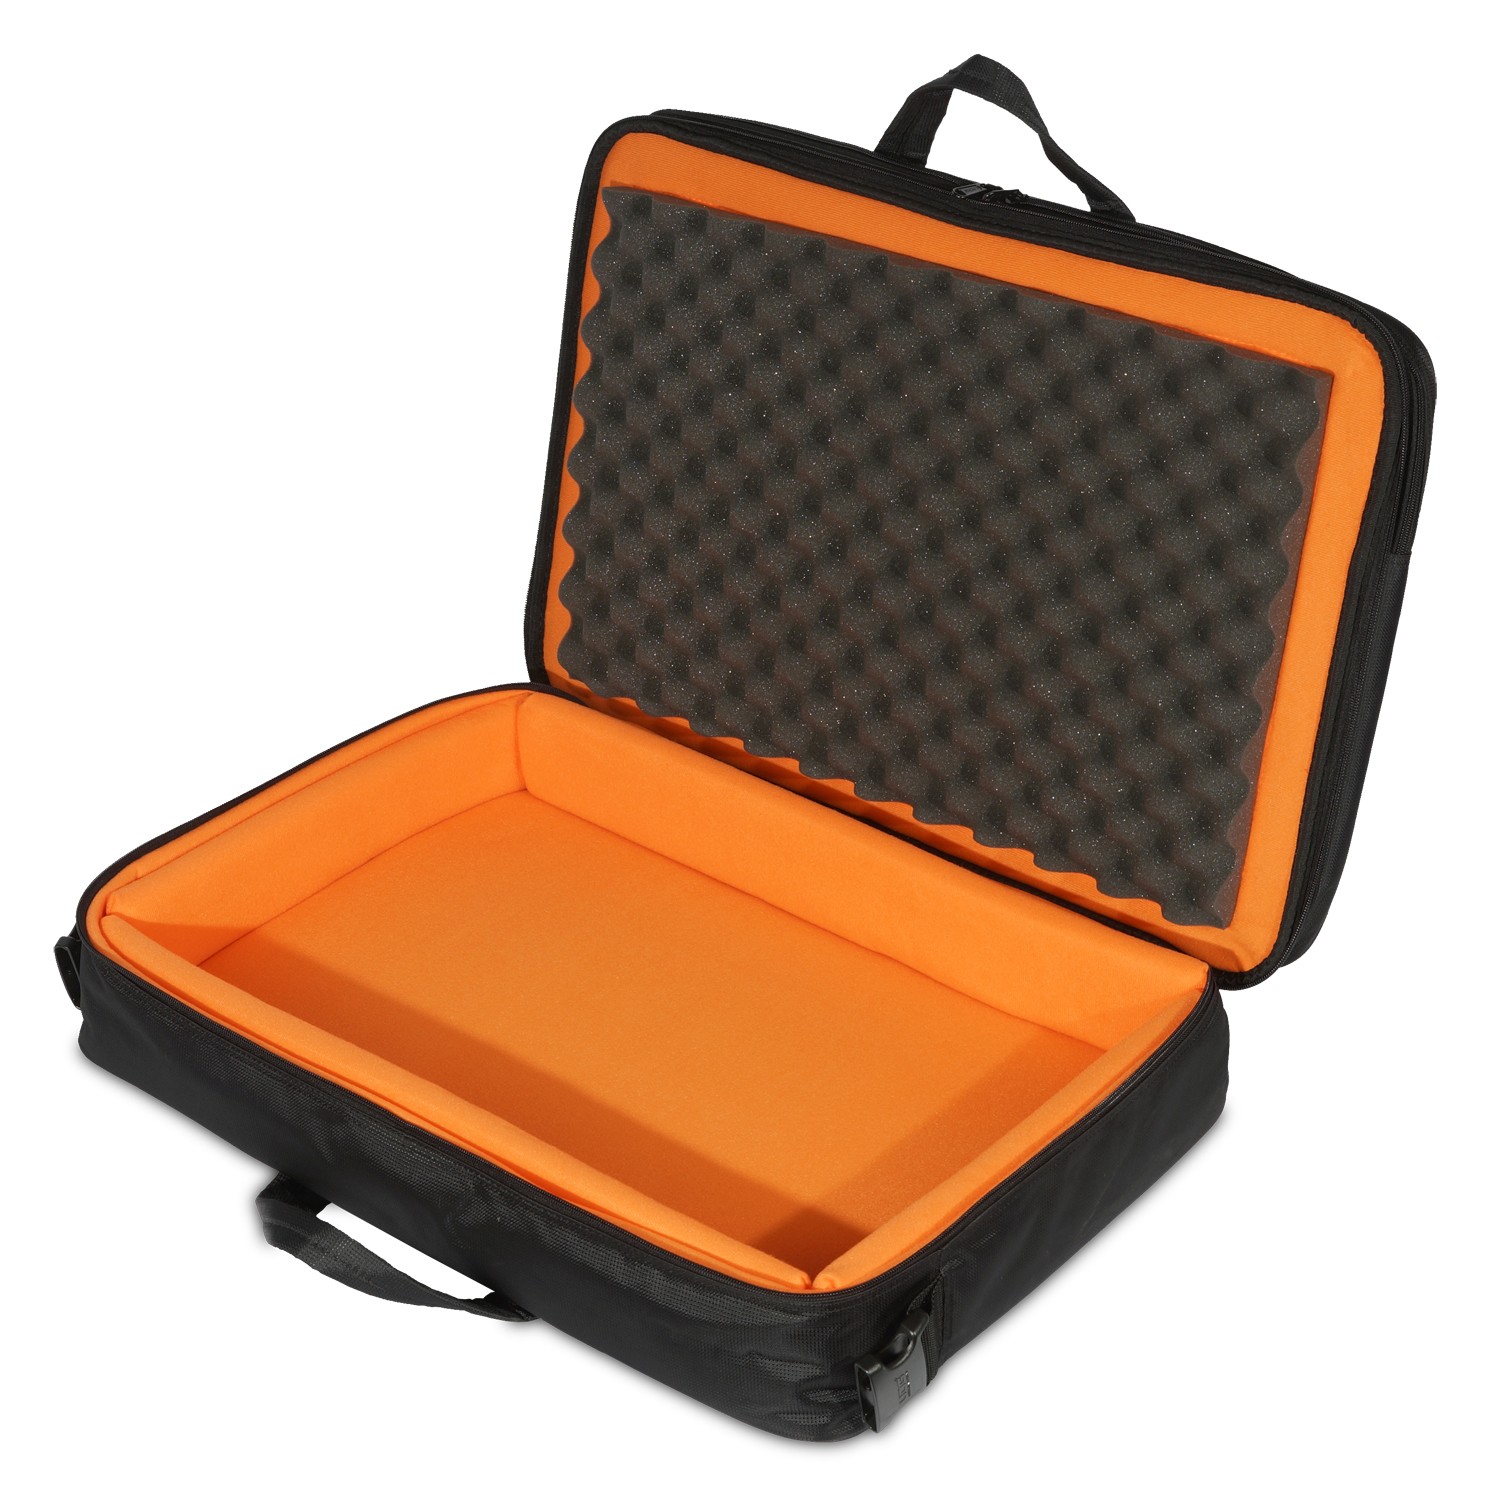 UDG Ultimate Midi Controller SlingBag Large Black/Orange MK3 по цене 25 800 ₽